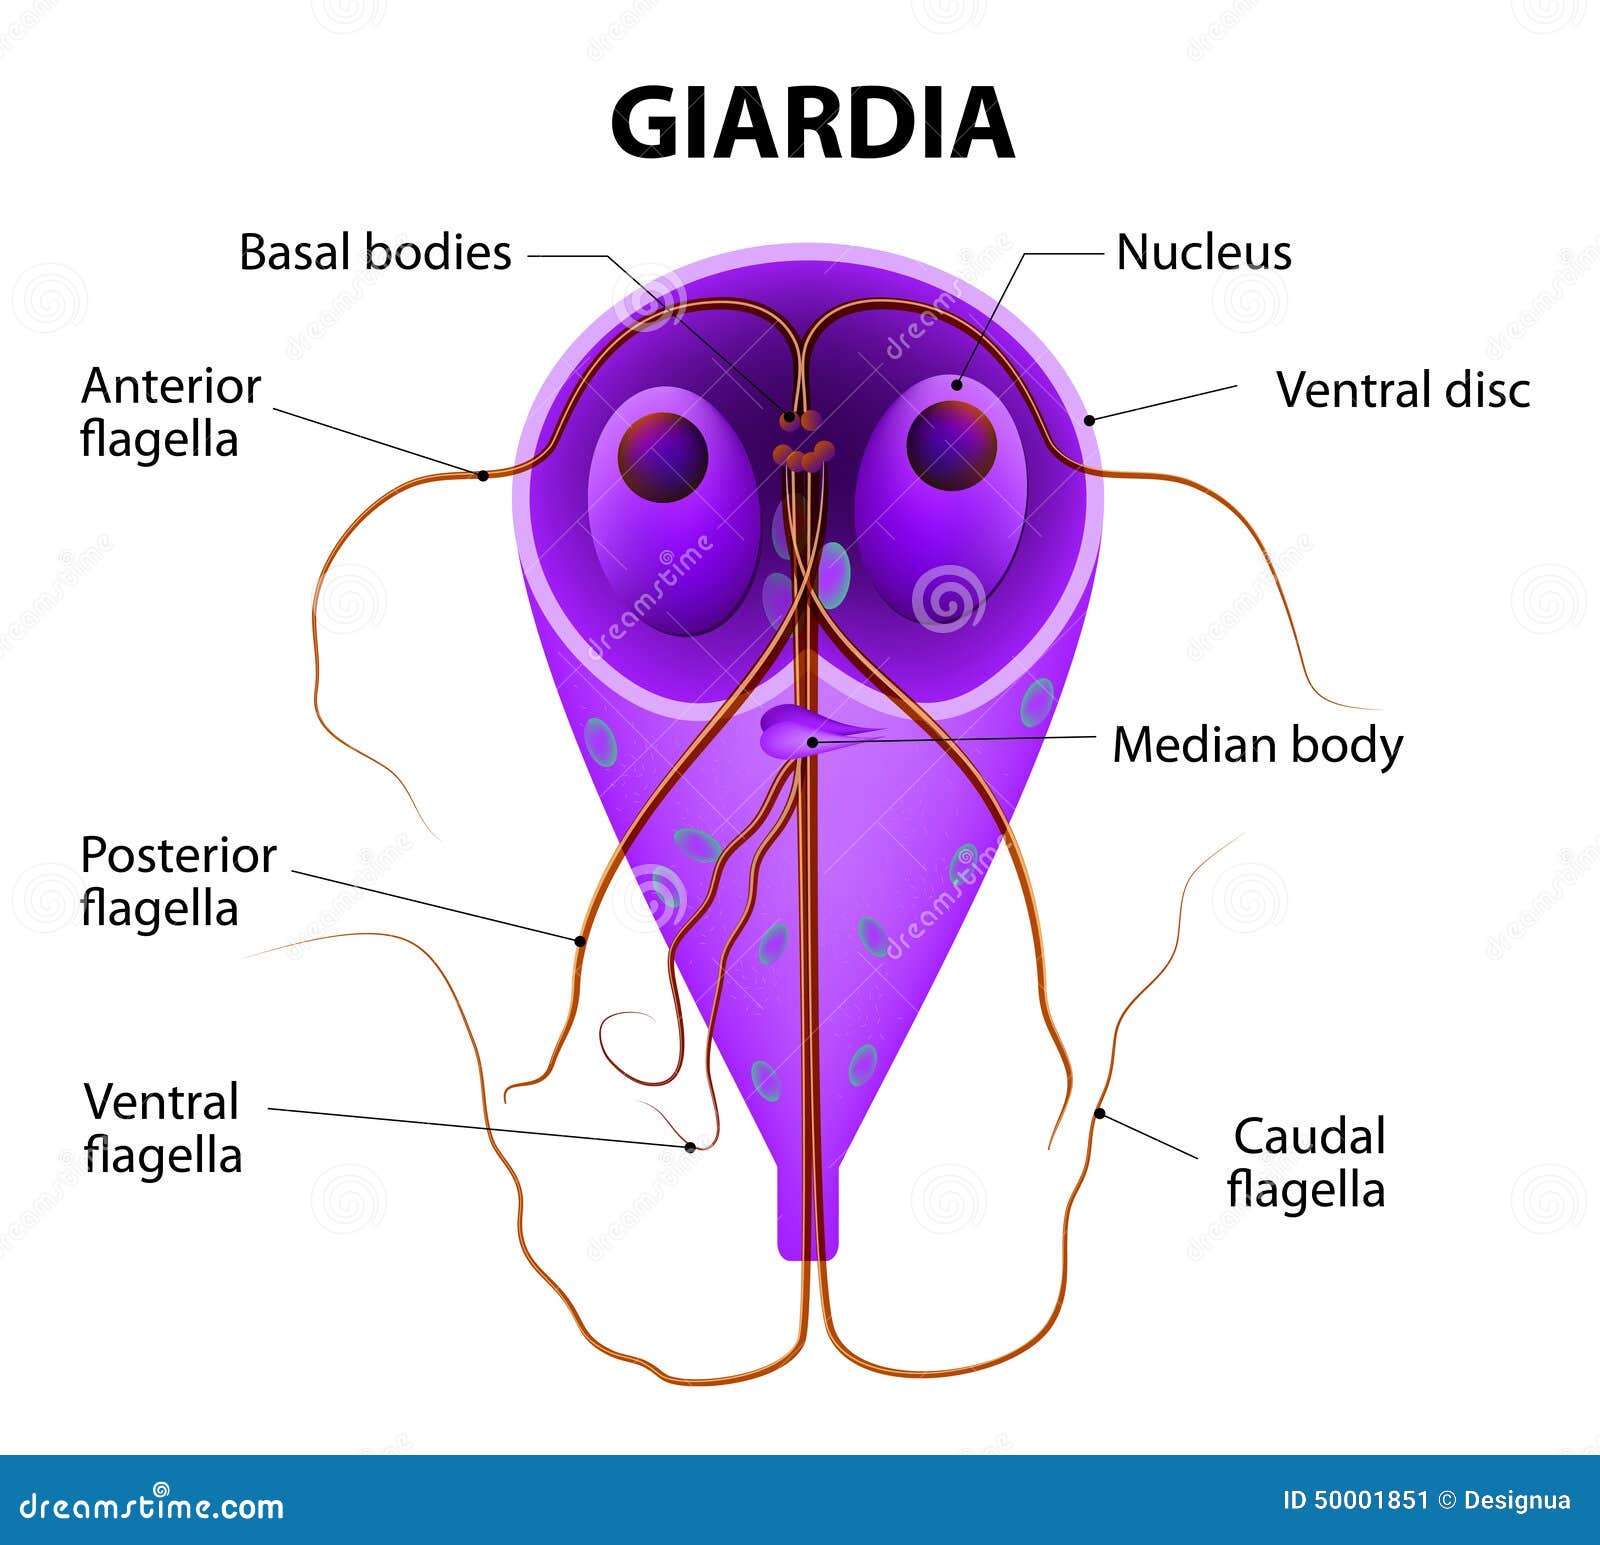 giardia protozoa symptoms